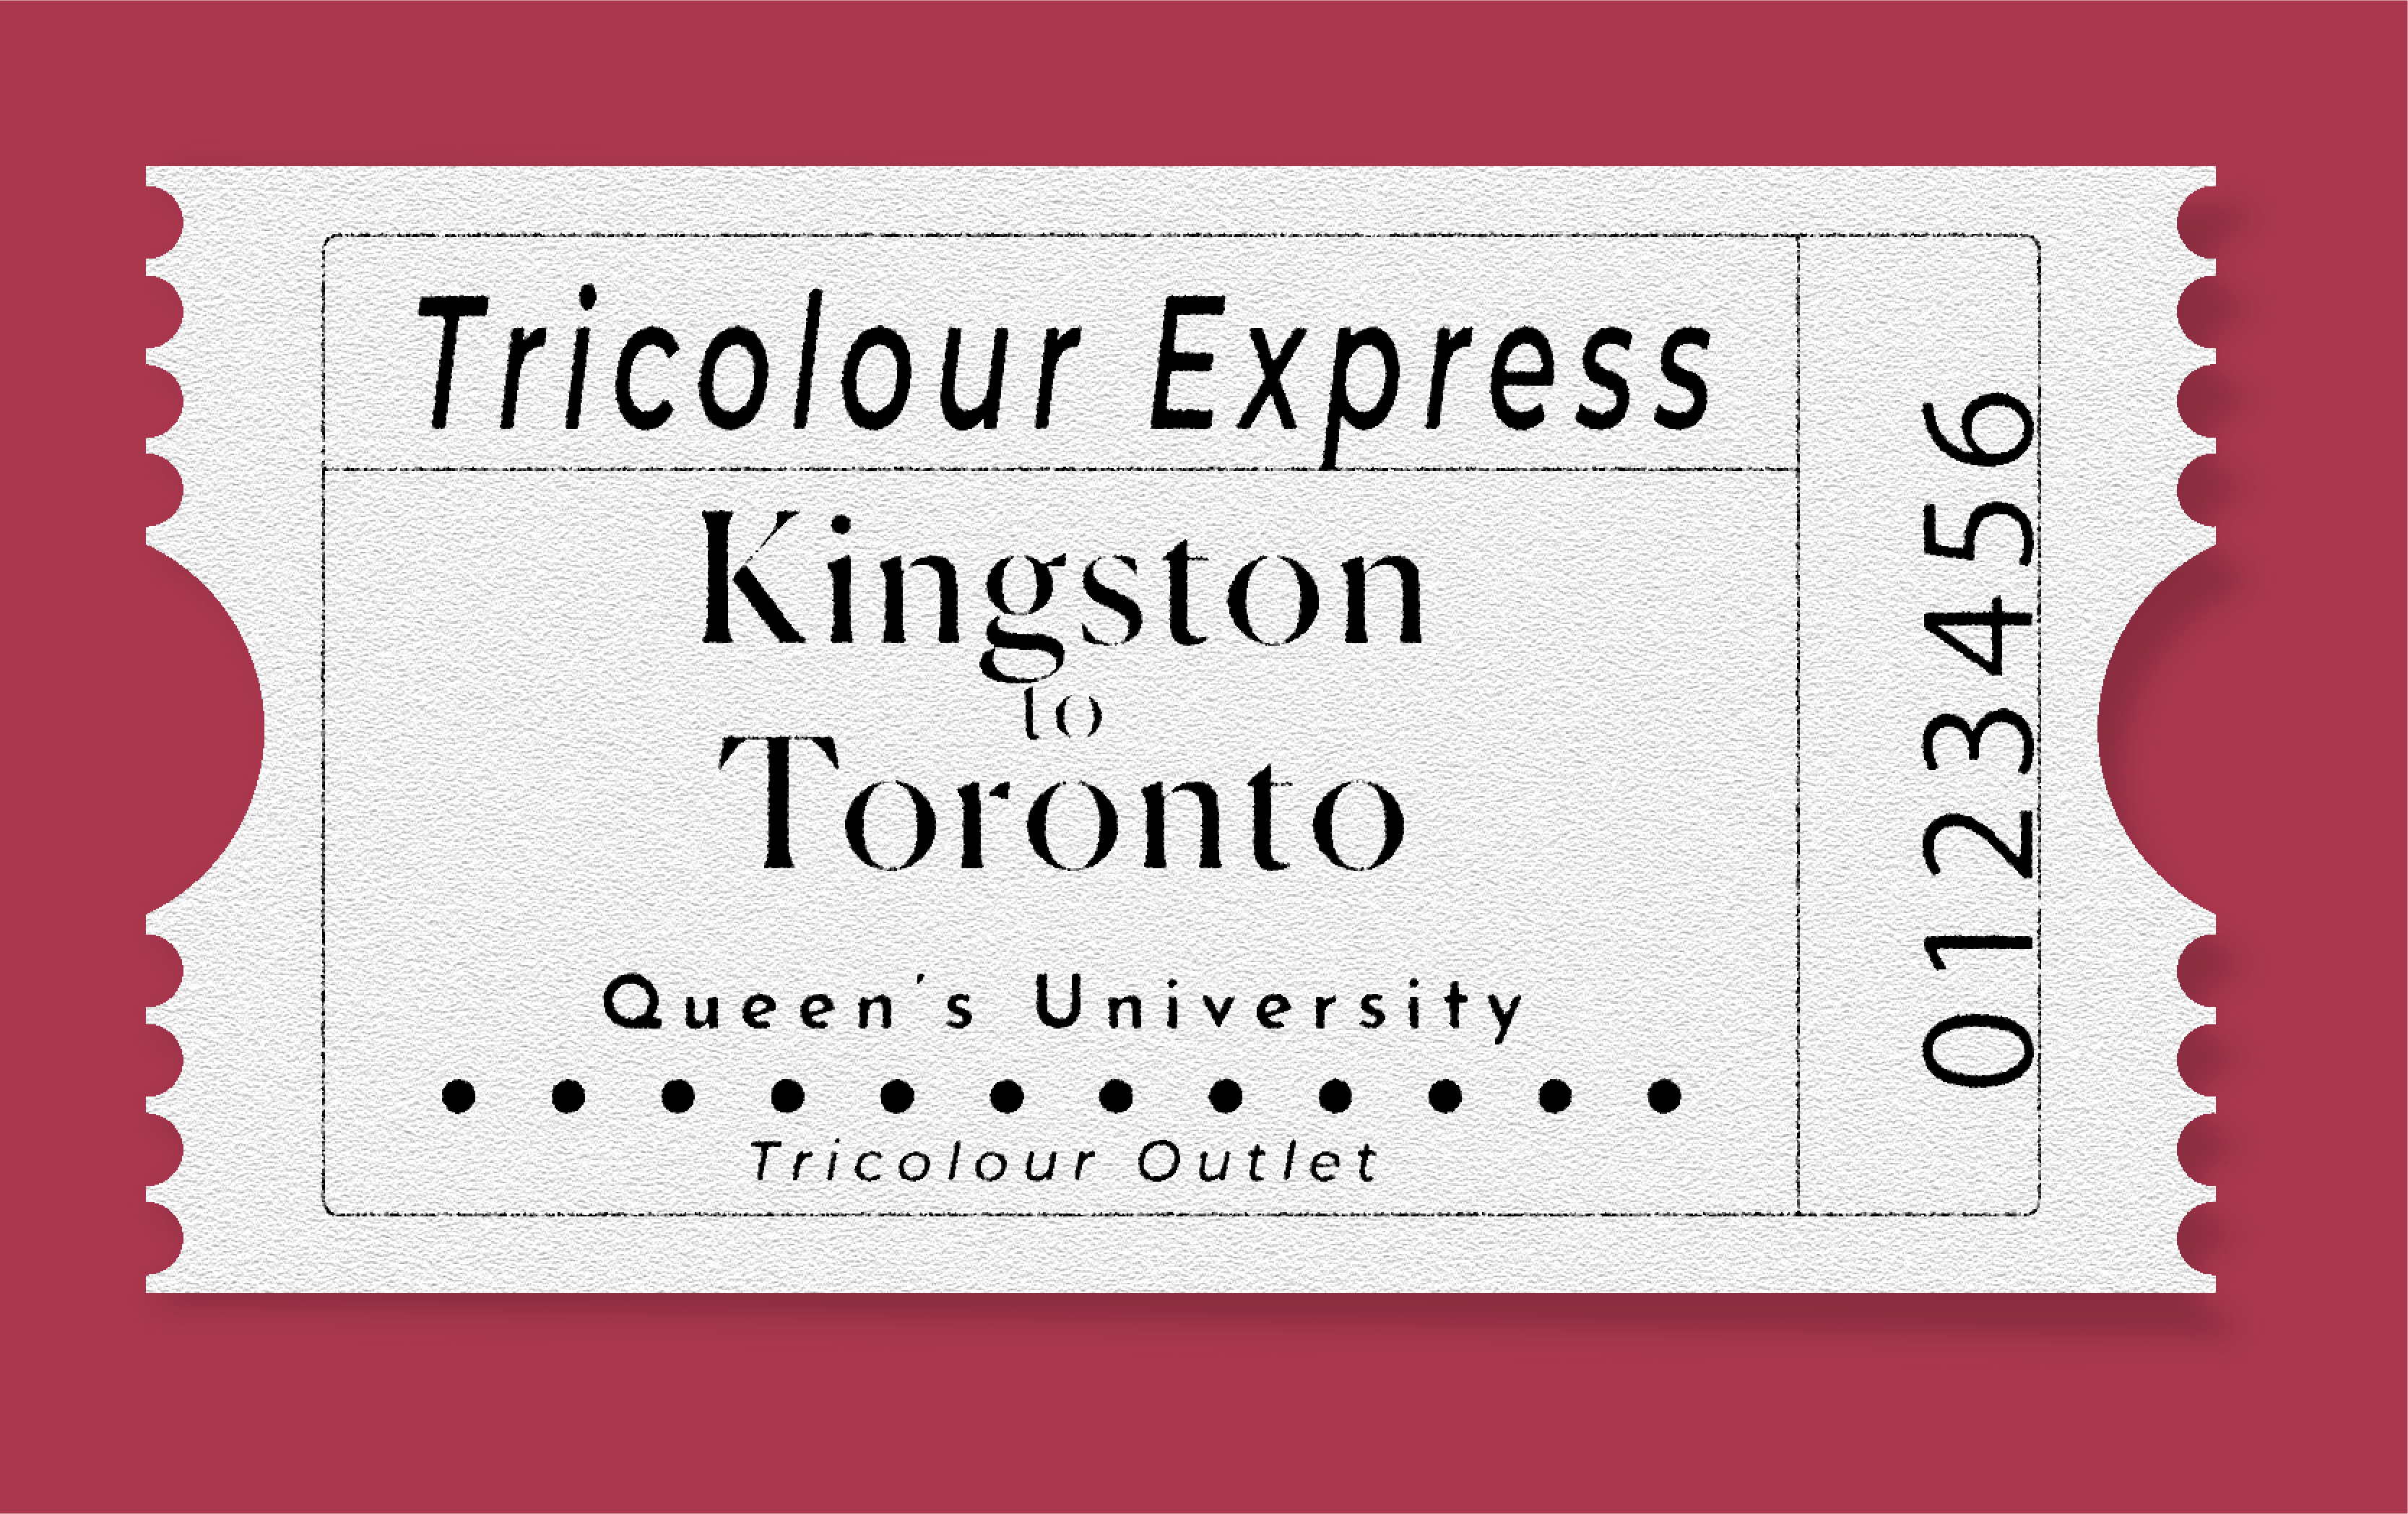 Tricolour Express: Kingston to Toronto